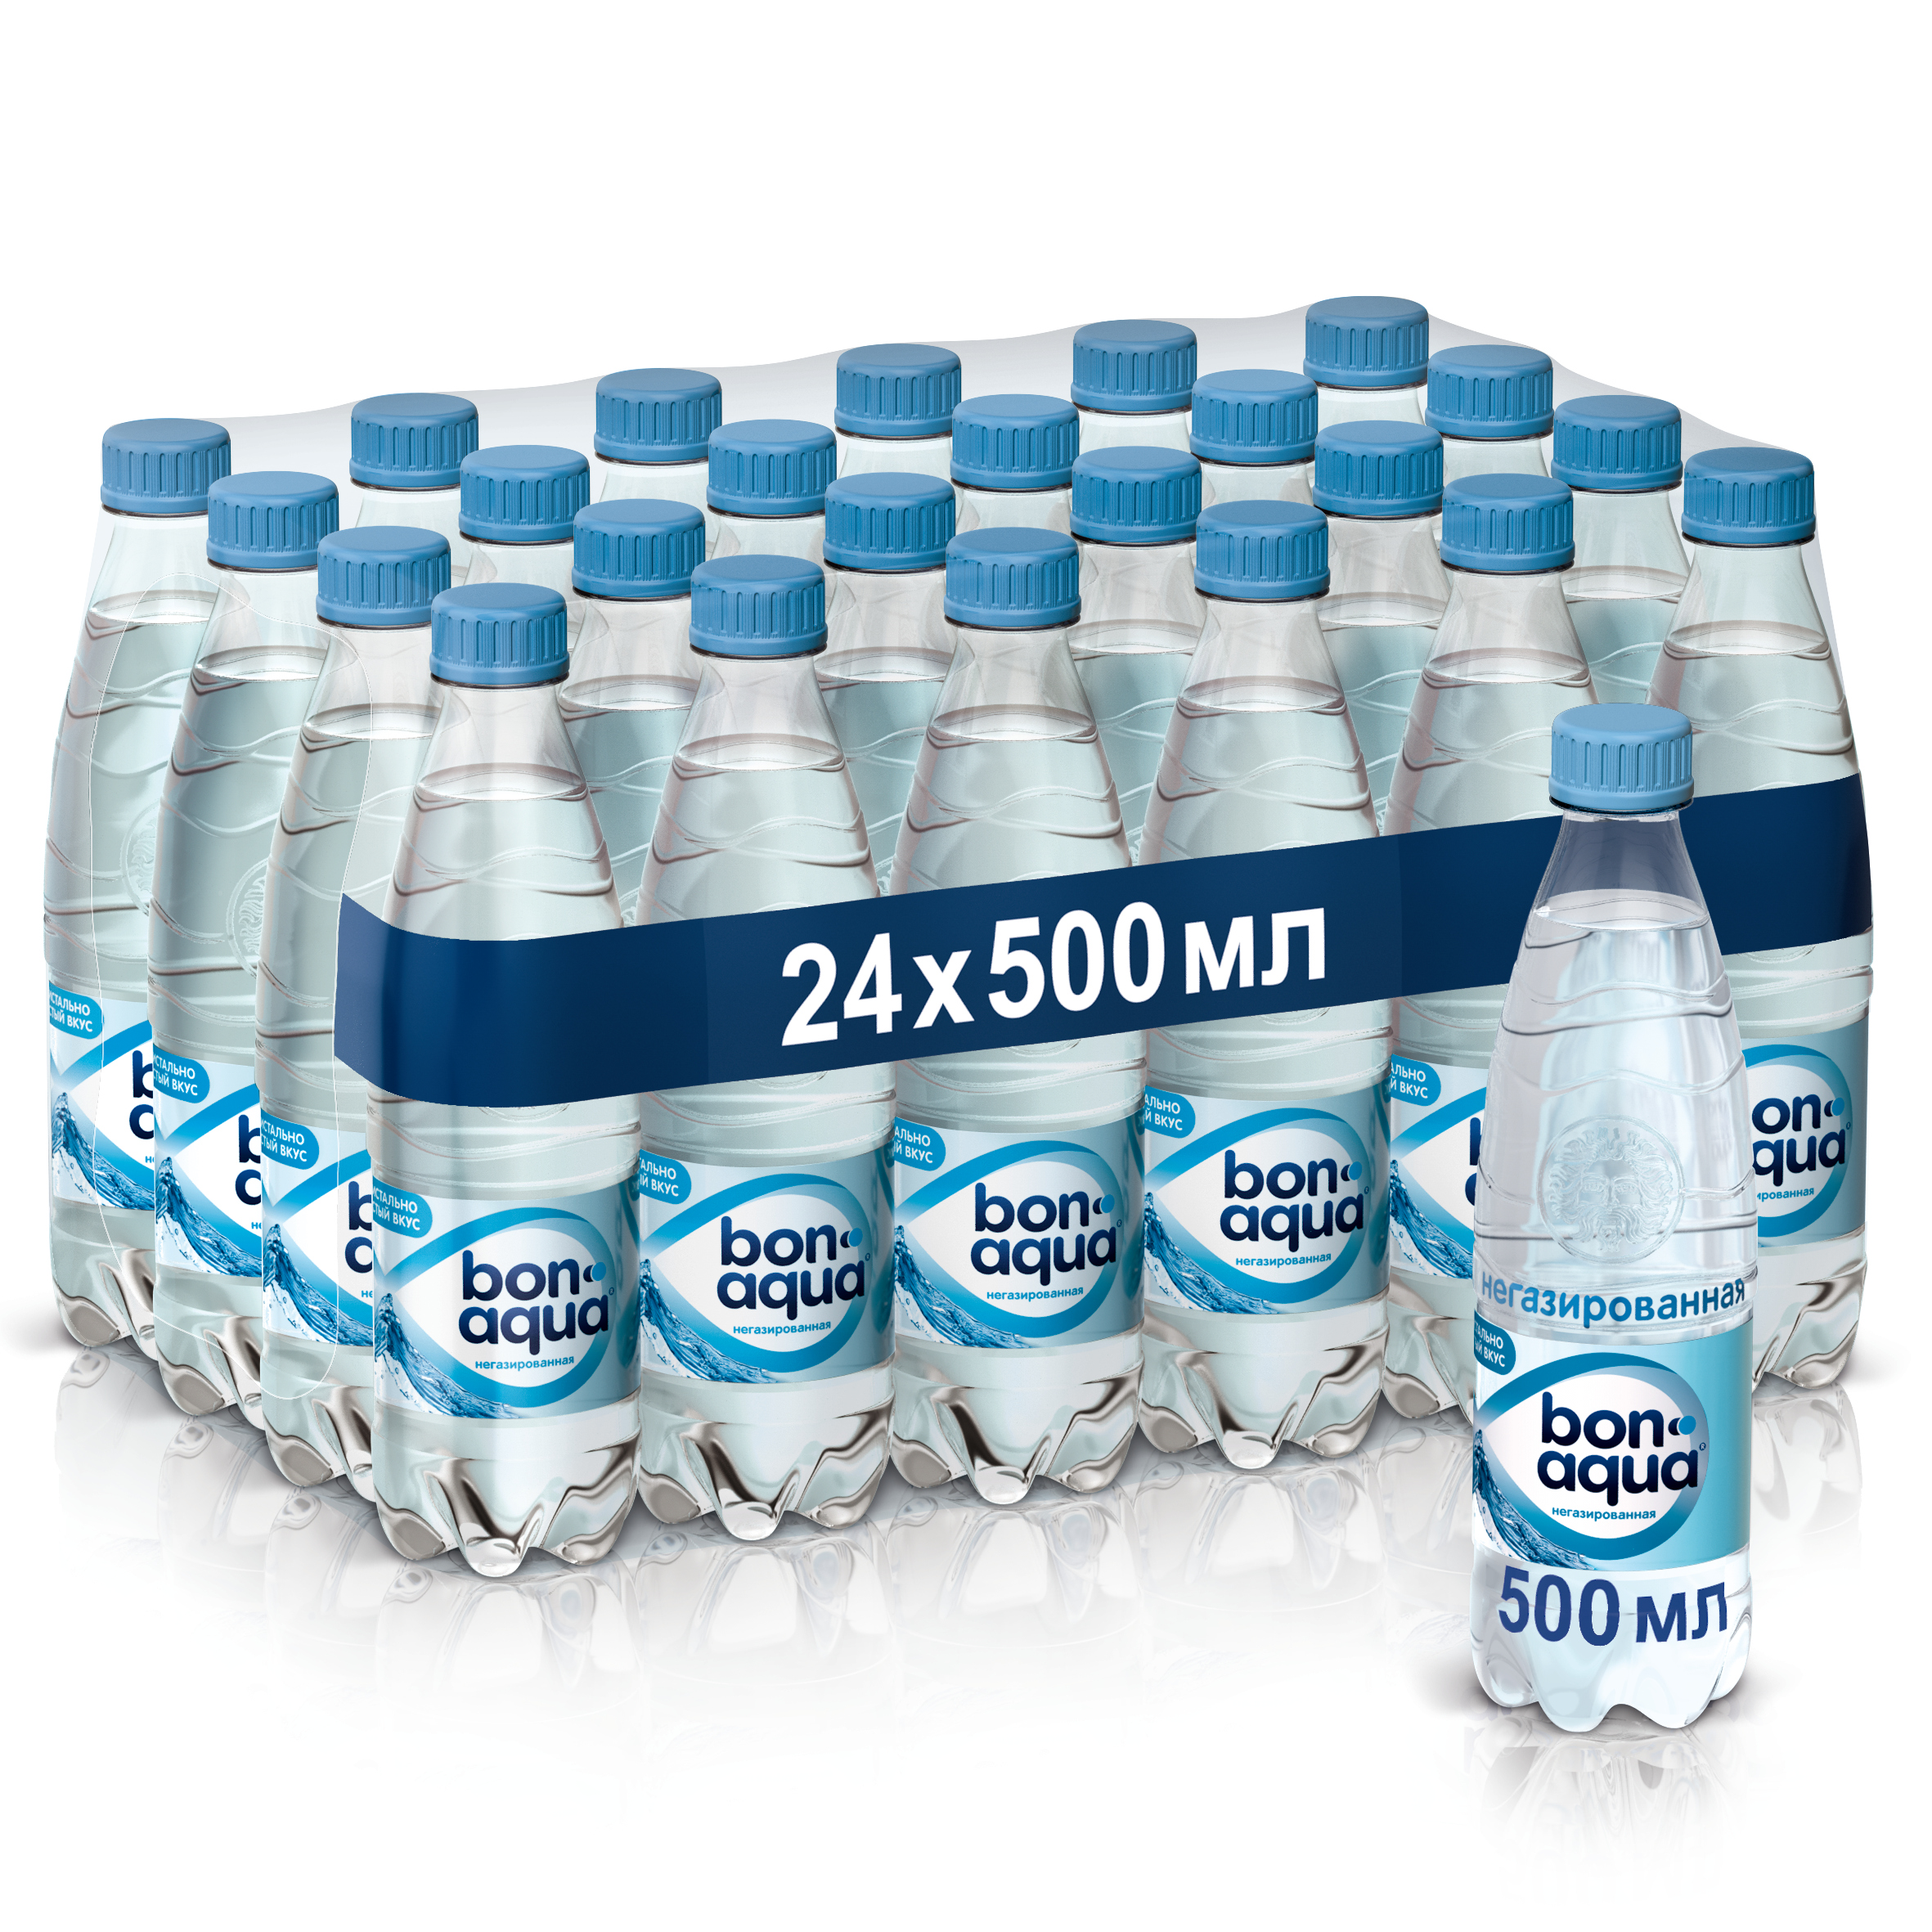 Бутылка негазированной воды. Бон Аква 0.5 л негазированная. Вода Bonaqua негазированная 0.5л. Вода Бонаква 500 мл. Вода Бонаква 0.5л, ГАЗ ПЭТ, шт (24шт/уп).